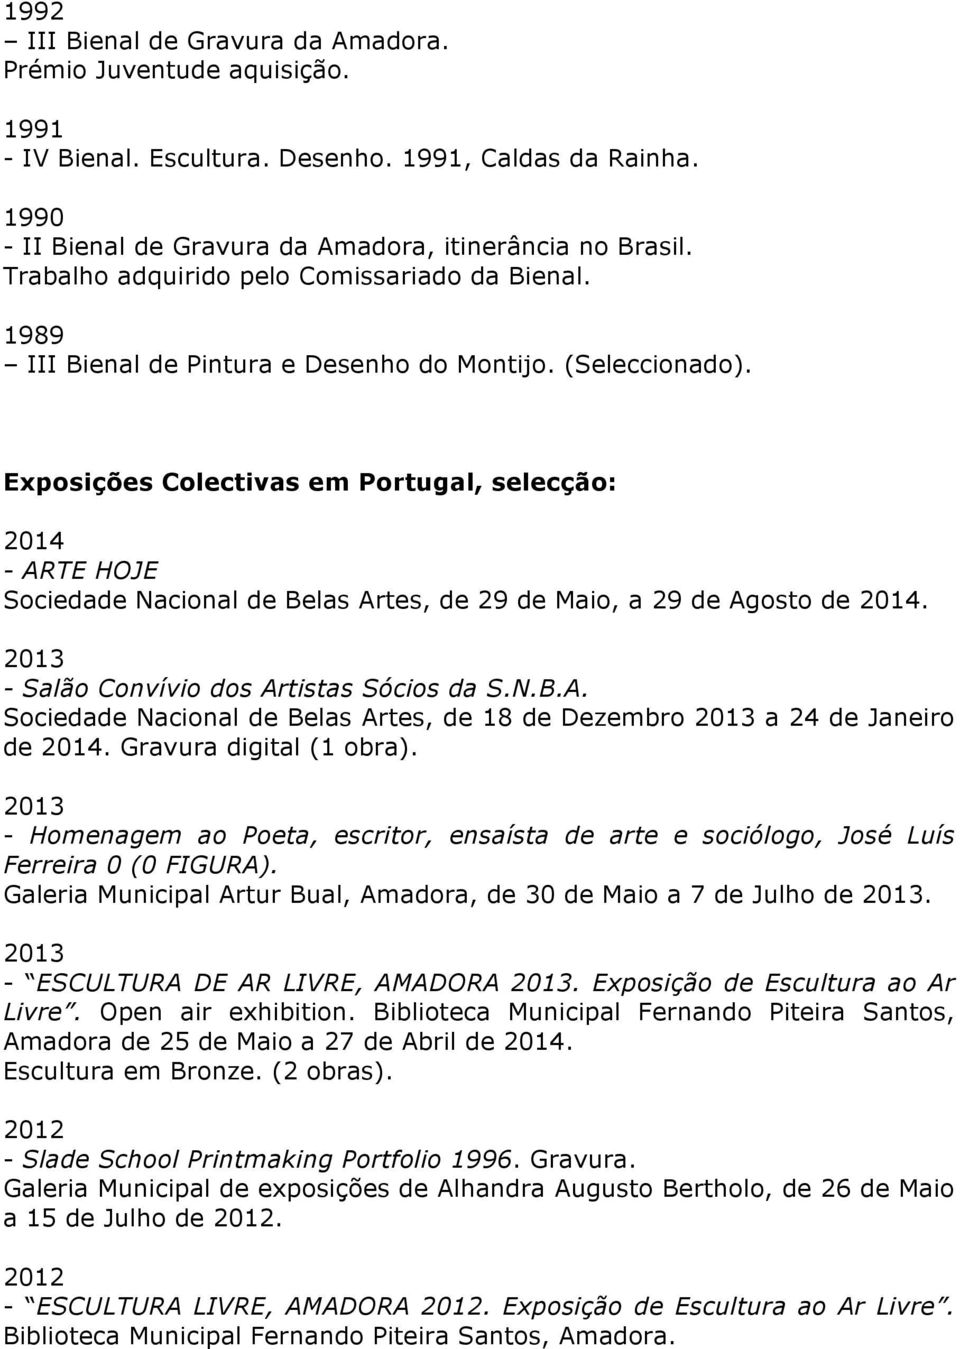 Exposições Colectivas em Portugal, selecção: - ARTE HOJE Sociedade Nacional de Belas Artes, de 29 de Maio, a 29 de Agosto de. 2013 - Salão Convívio dos Artistas Sócios da S.N.B.A. Sociedade Nacional de Belas Artes, de 18 de Dezembro 2013 a 24 de Janeiro de.